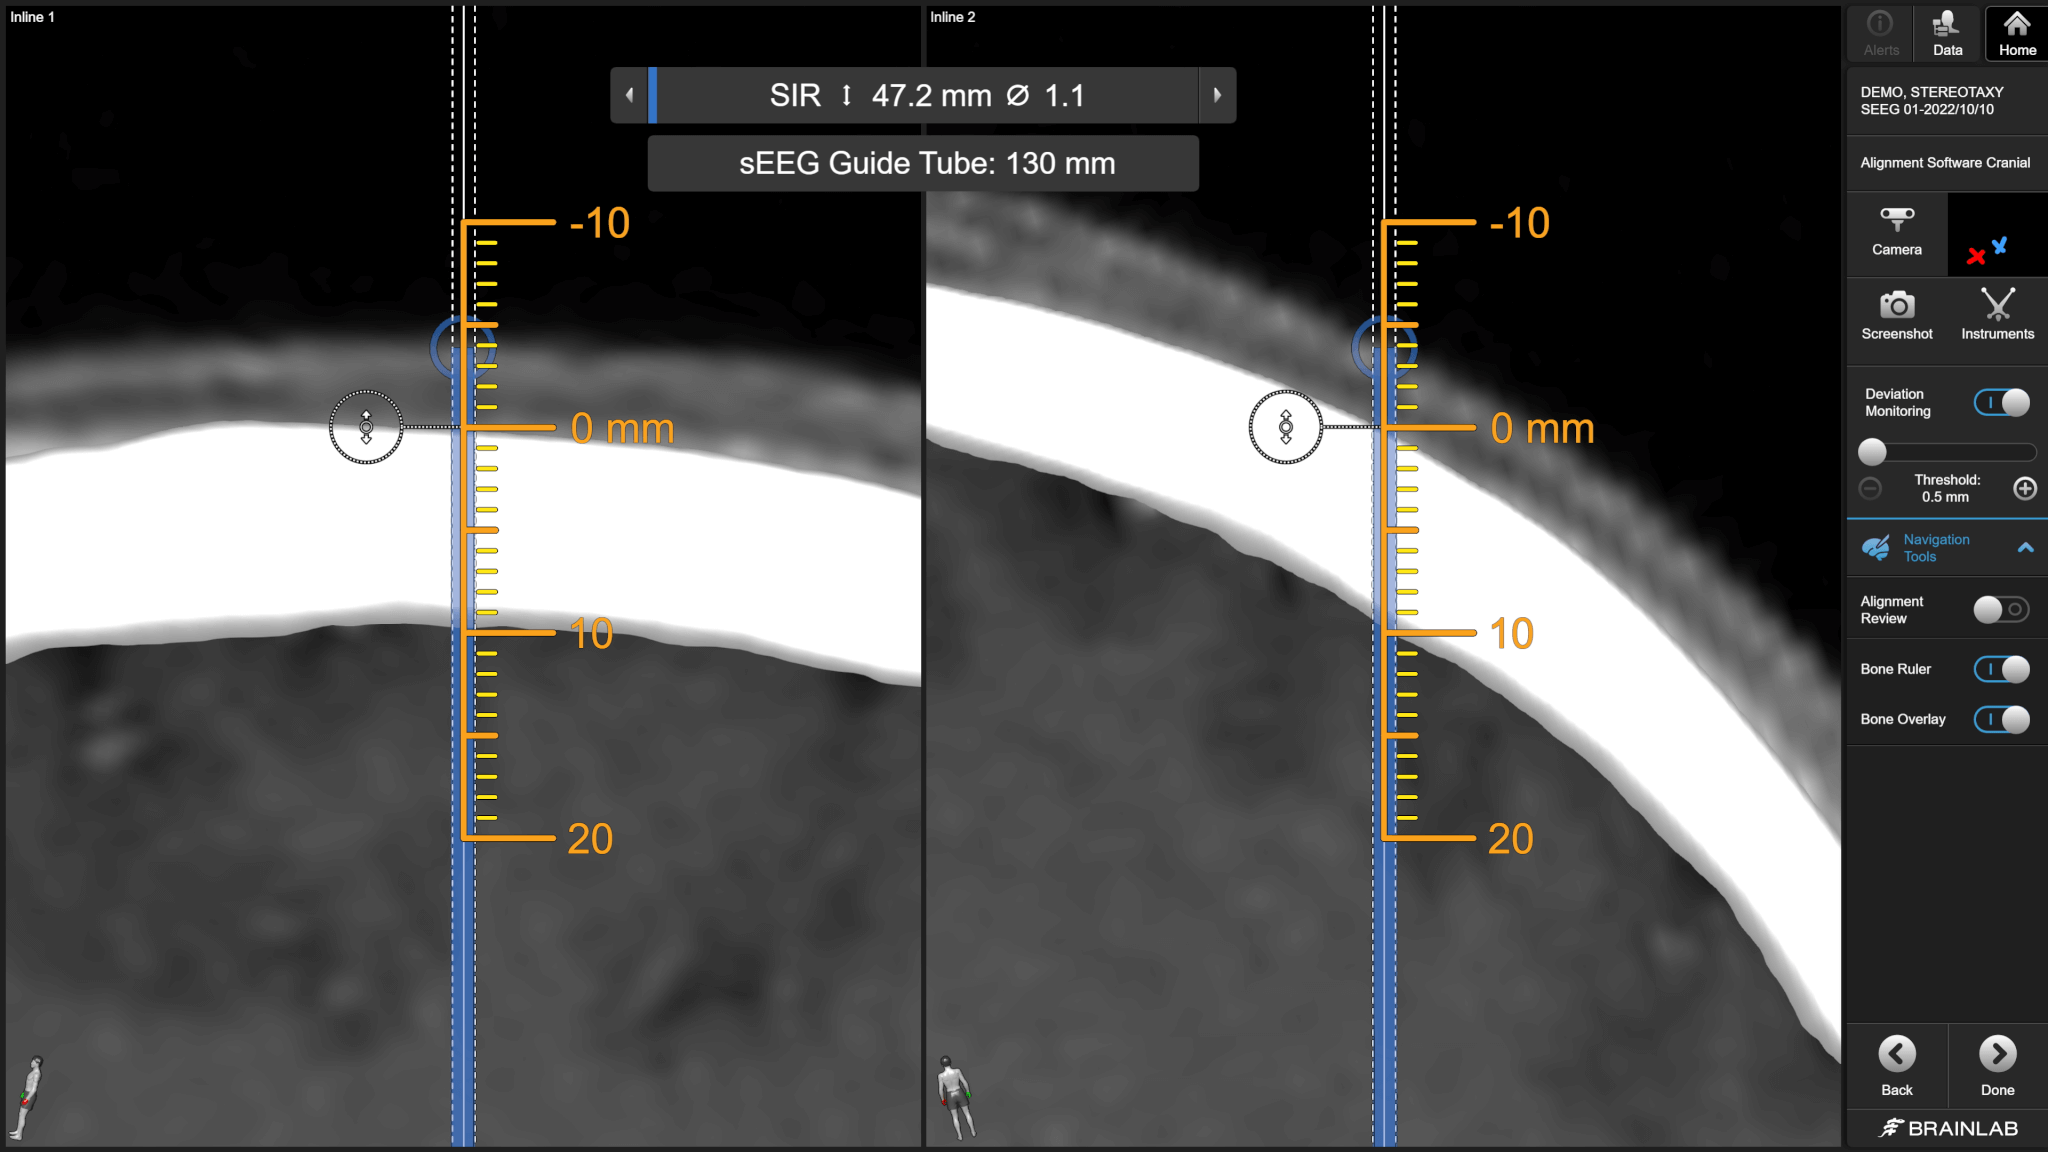 Captura de tela de software do Elements Curvature Correction depois que as imagens de tomografia e RM foram fusionadas com o software para corrigir diferenças no posicionamento da coluna durante a aquisição das imagens.